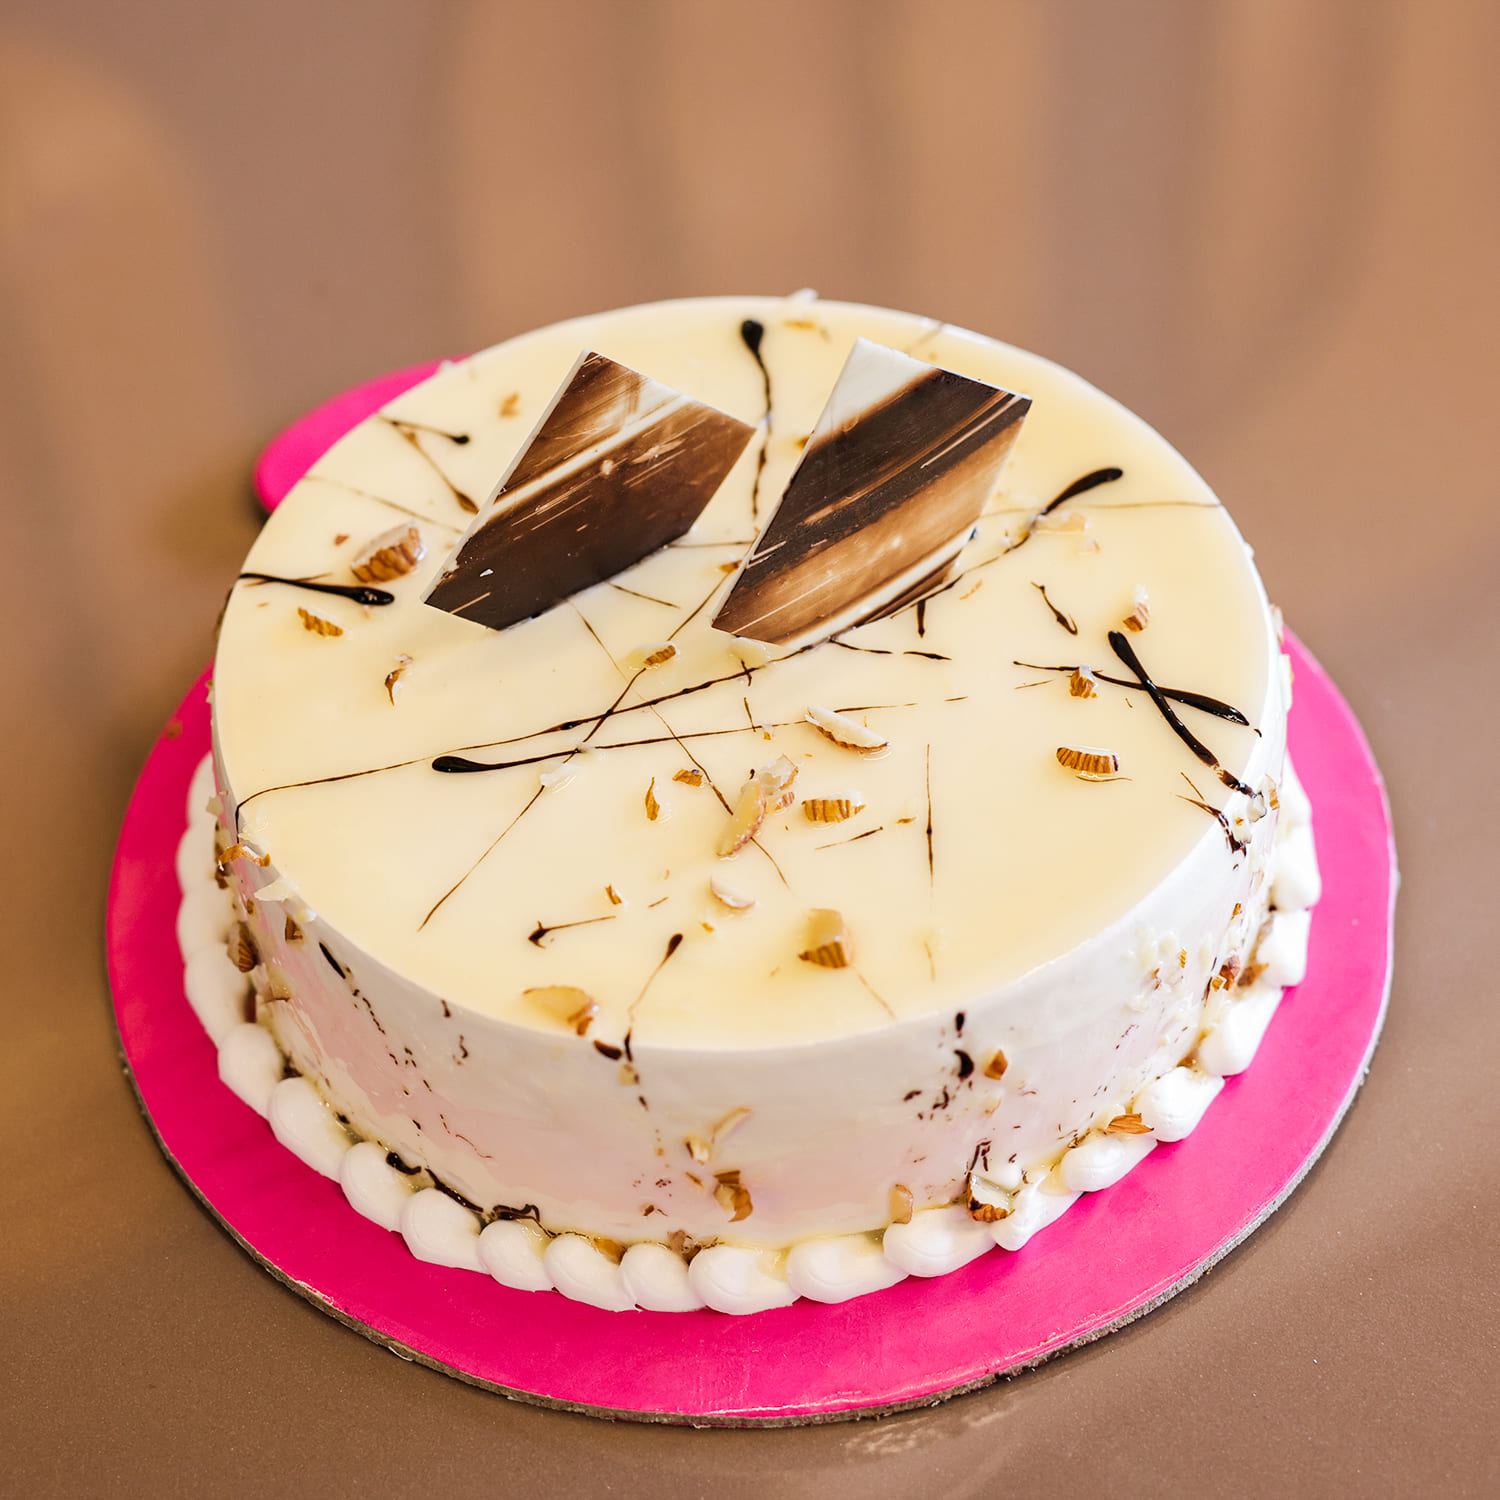 The Best Chocolate Hazelnut Cake - Momsdish